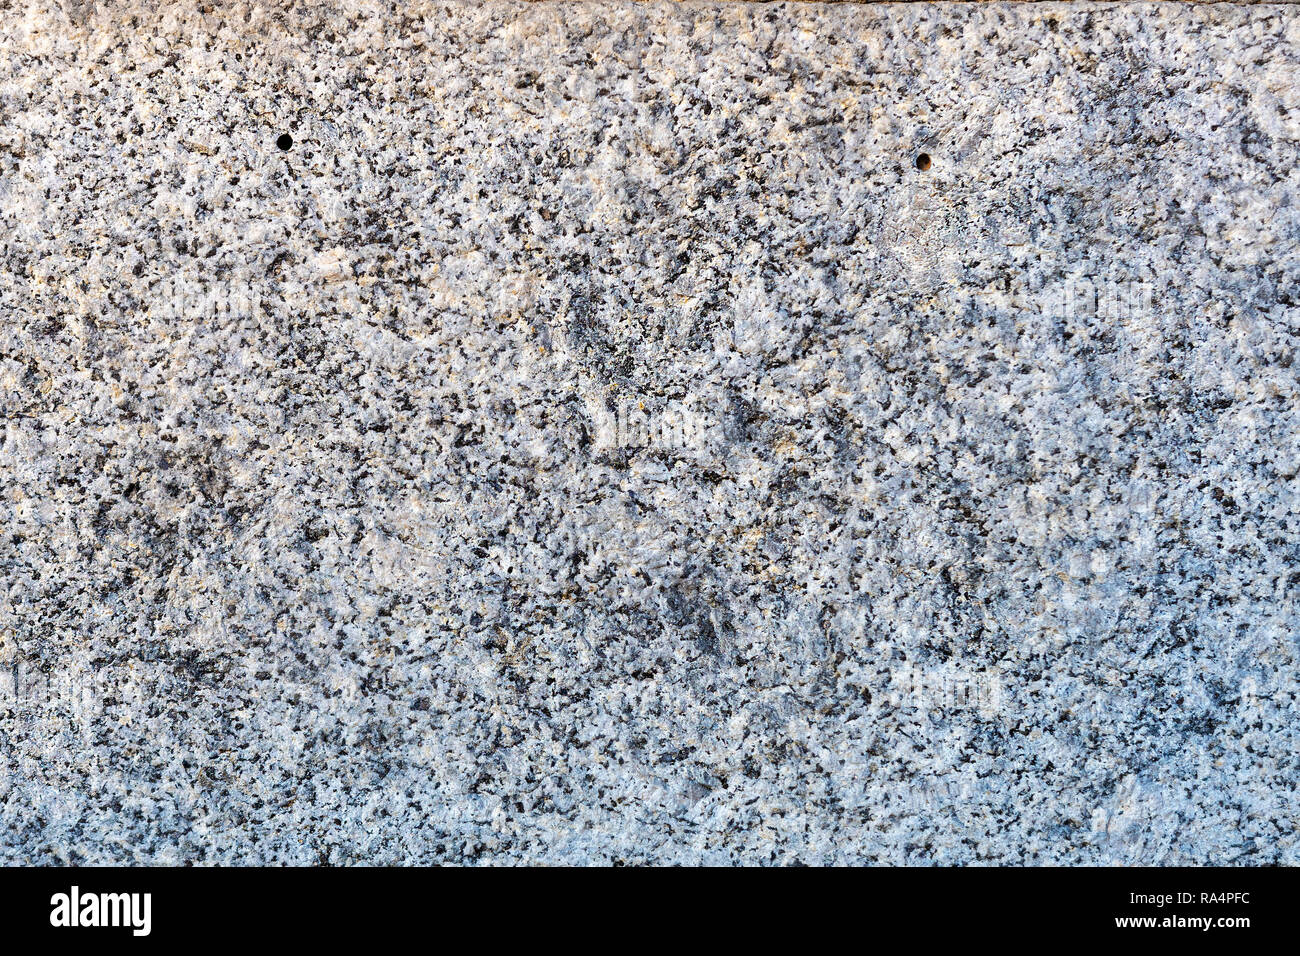 Un gros plan d'une surface de roche de granit gris traités plaque. Un fragment d'un mur de pierre de décoration. La texture du matériau granit gris lumineux. Banque D'Images